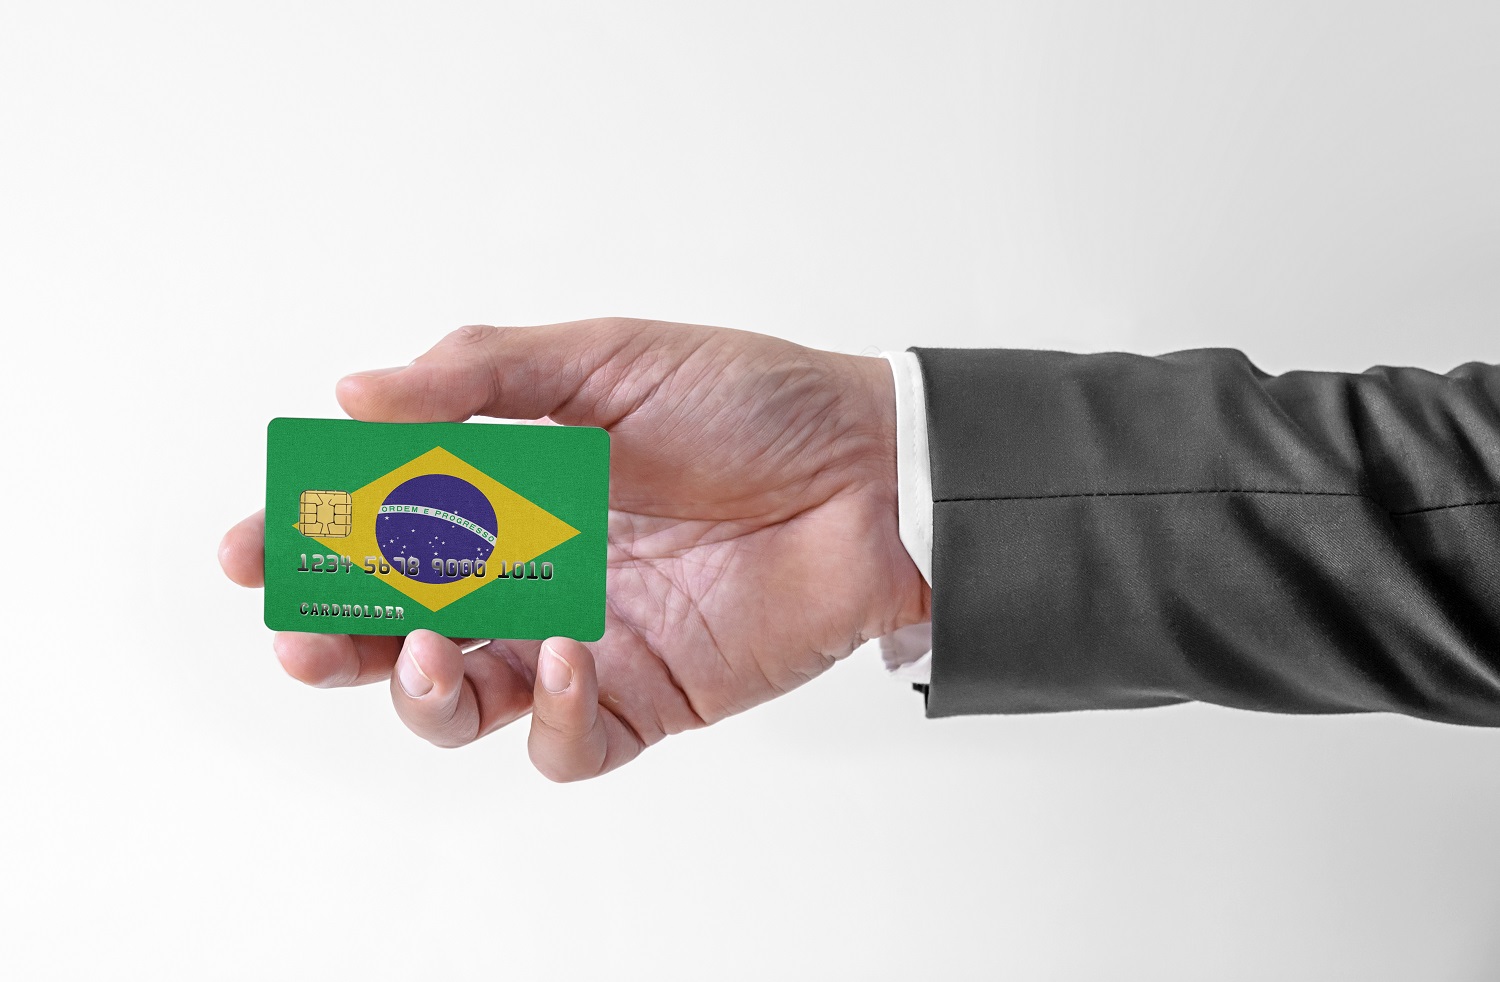 Visa participe au développement d'un projet de CBDC alimenté par la blockchain au Brésil